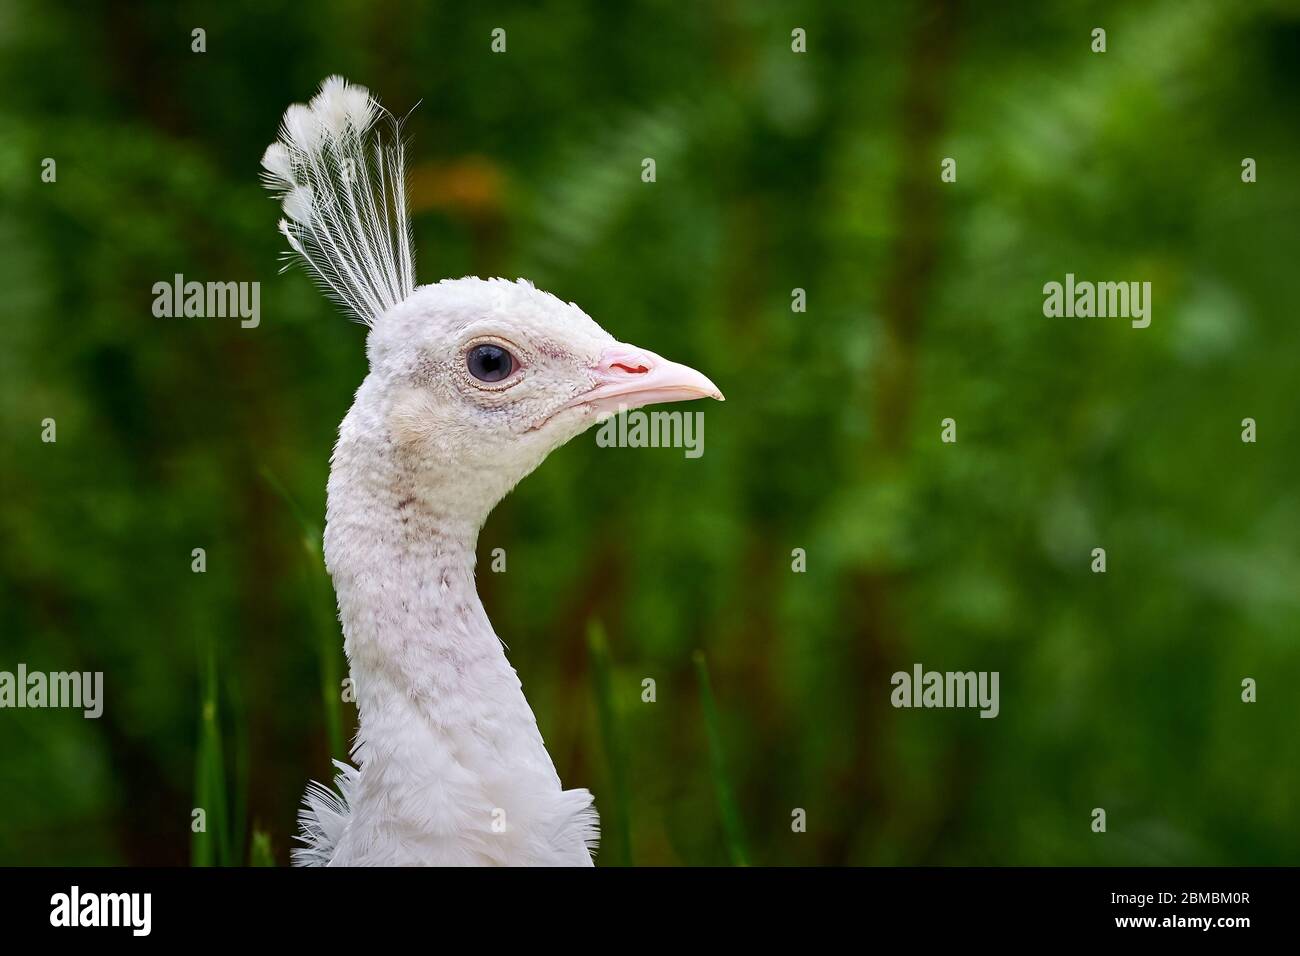 White peafowl, peahen (Pavo cristatus) Stock Photo